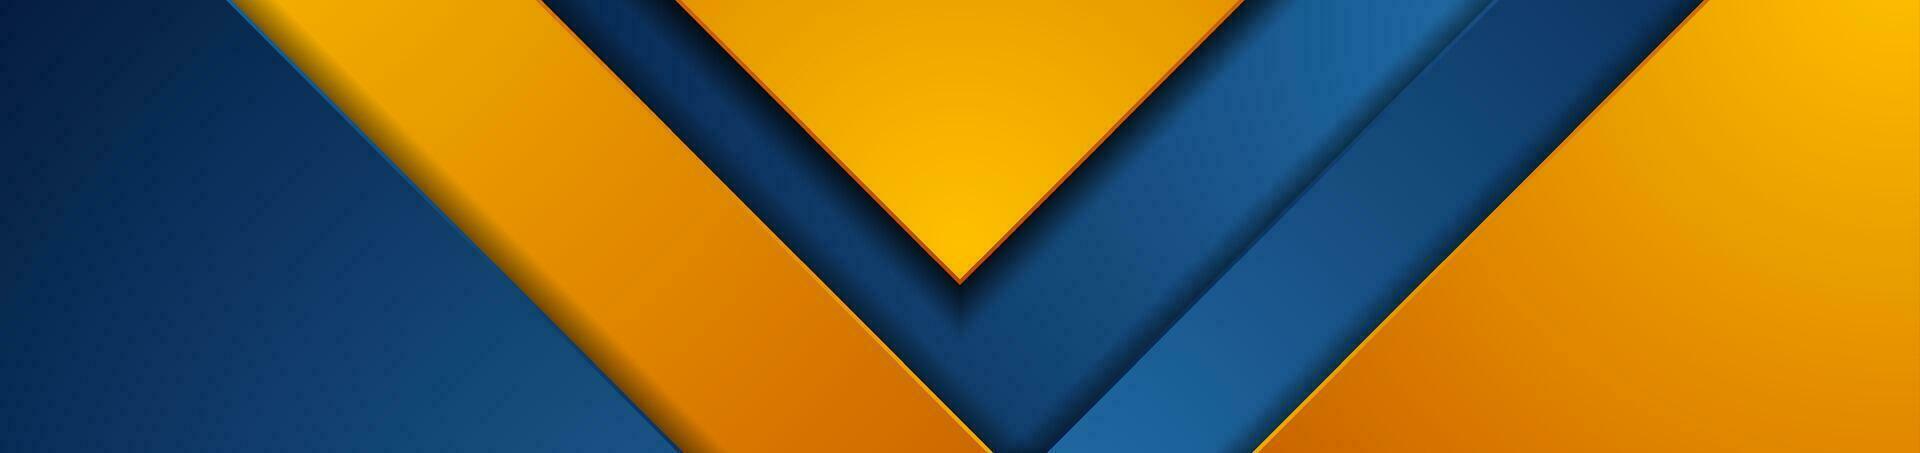 Blau Orange geometrisch Material abstrakt korporativ Hintergrund vektor